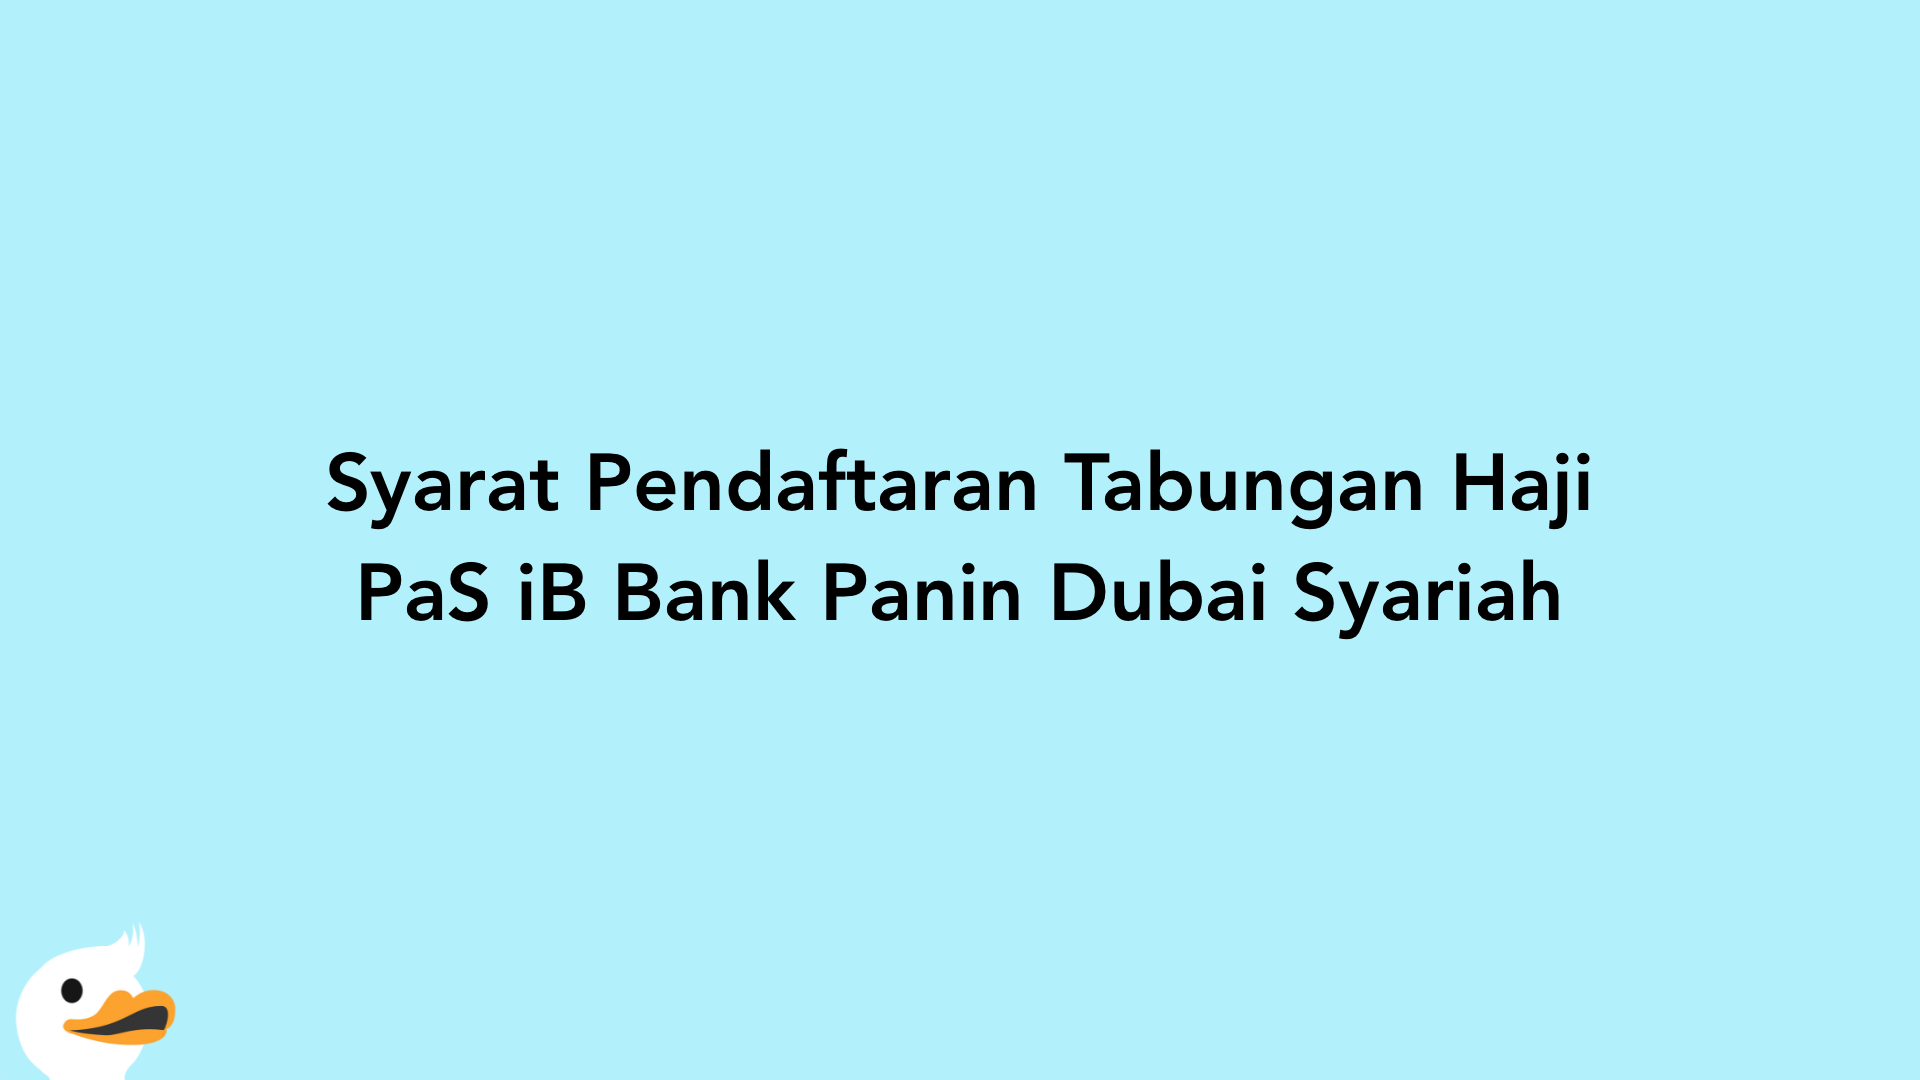 Syarat Pendaftaran Tabungan Haji PaS iB Bank Panin Dubai Syariah